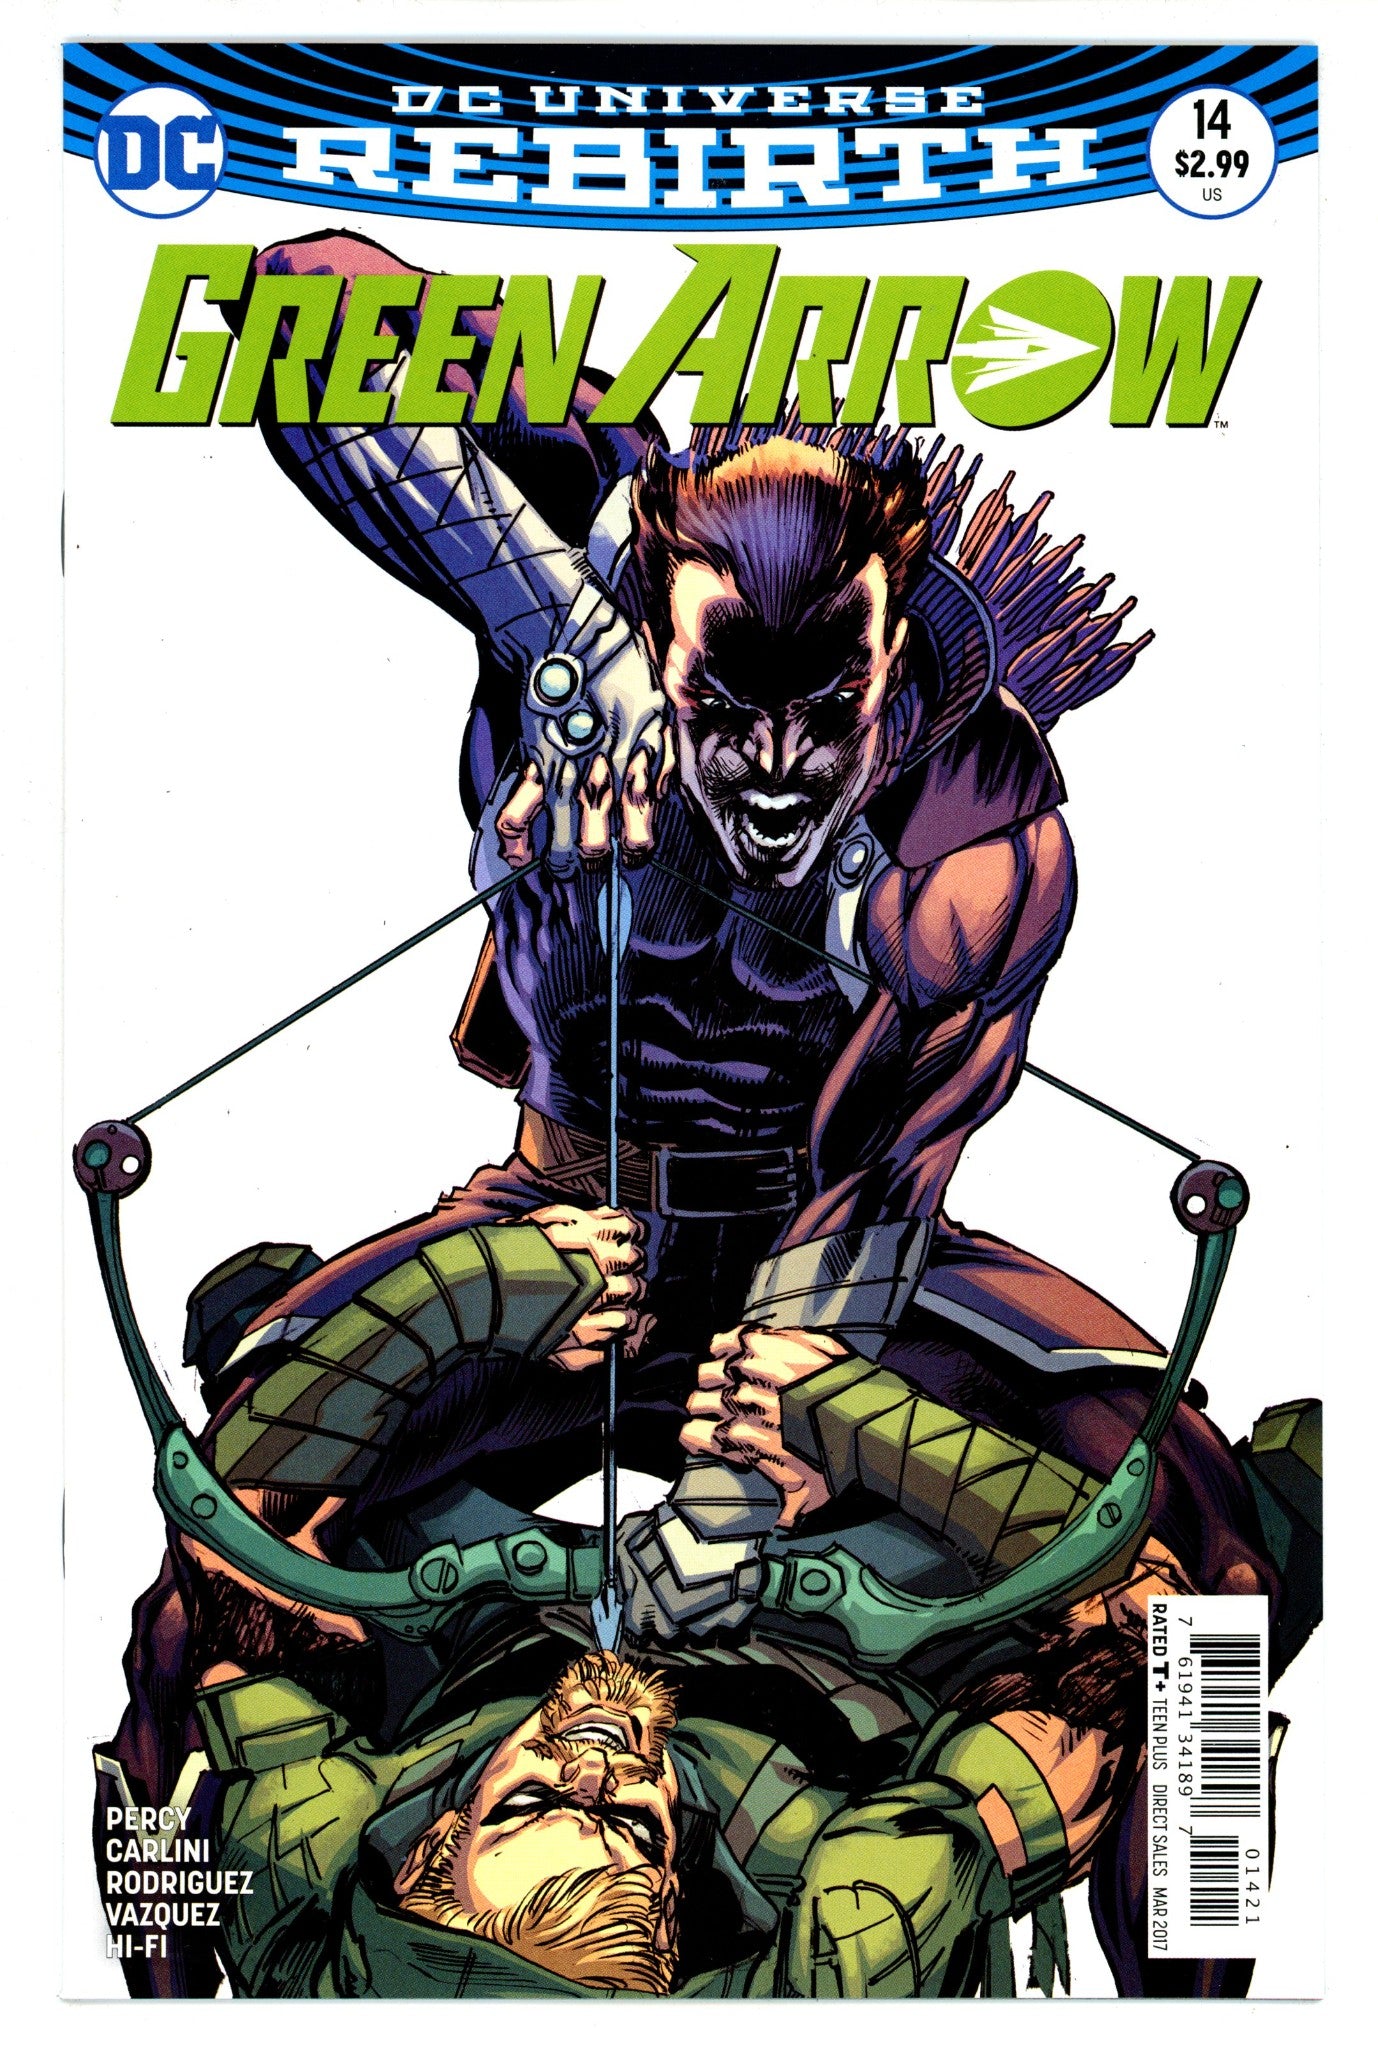 Green Arrow Vol 6 14 High Grade (2017) Adams Variant 